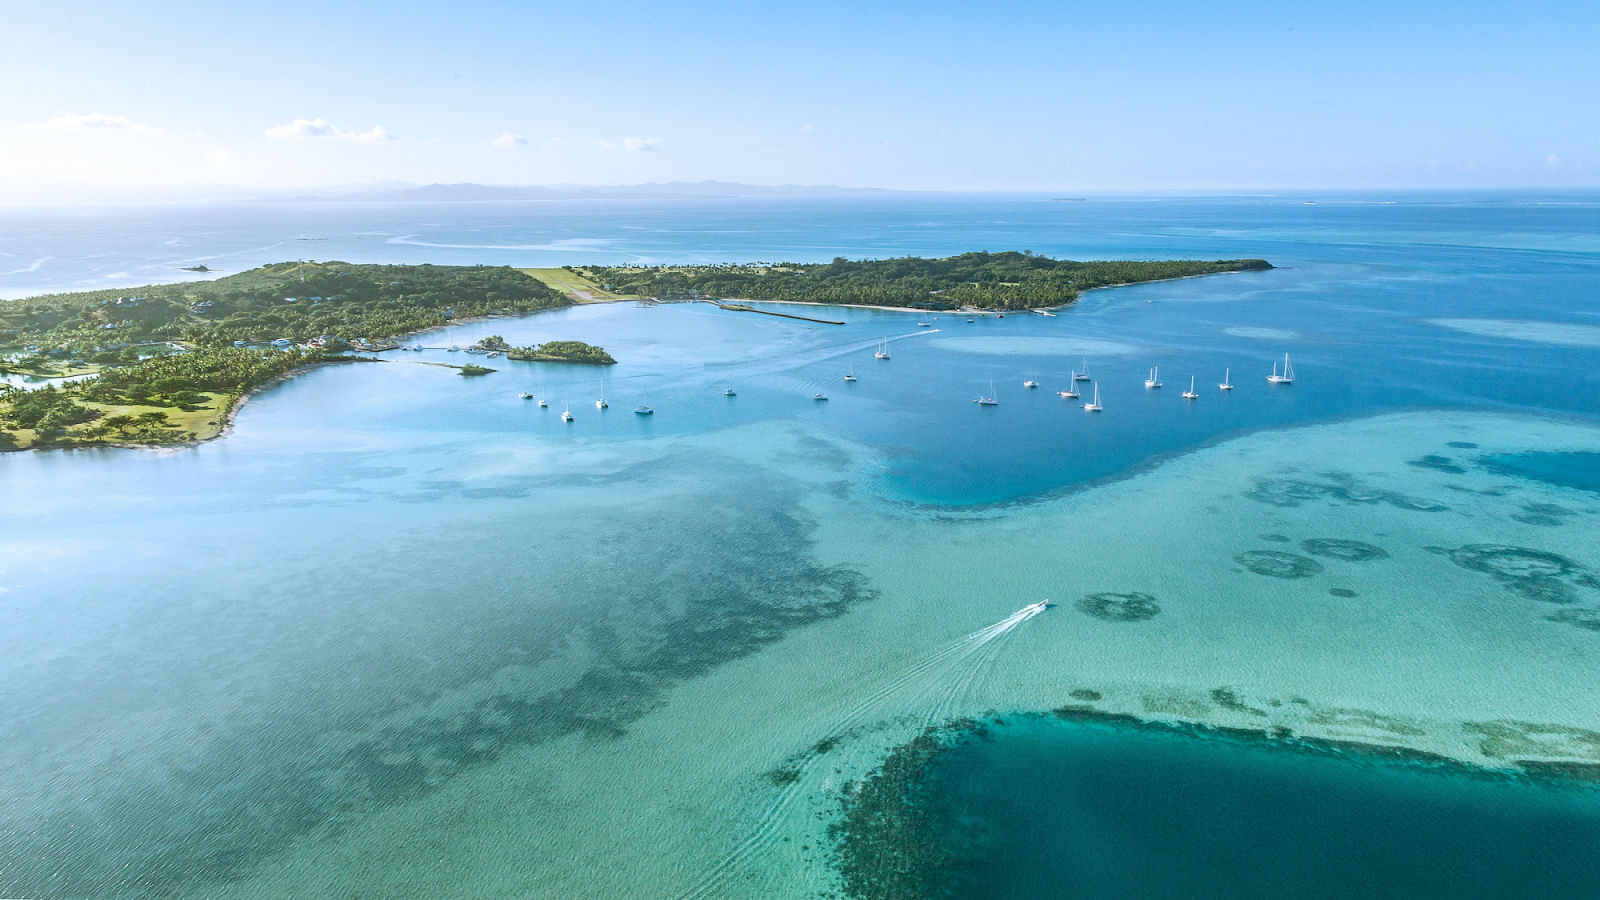 Hyr en båt i Fiji Islands